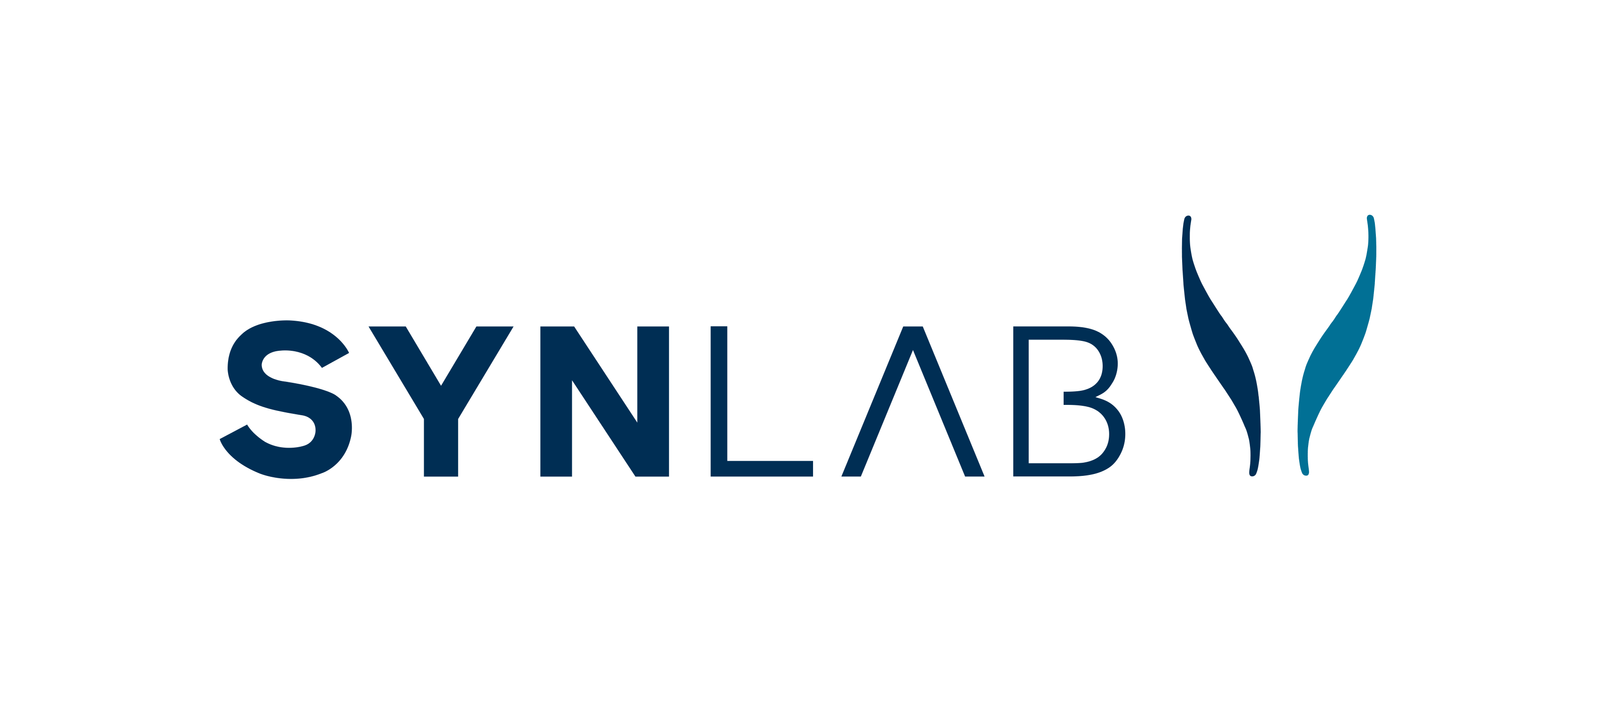 11. Synlab